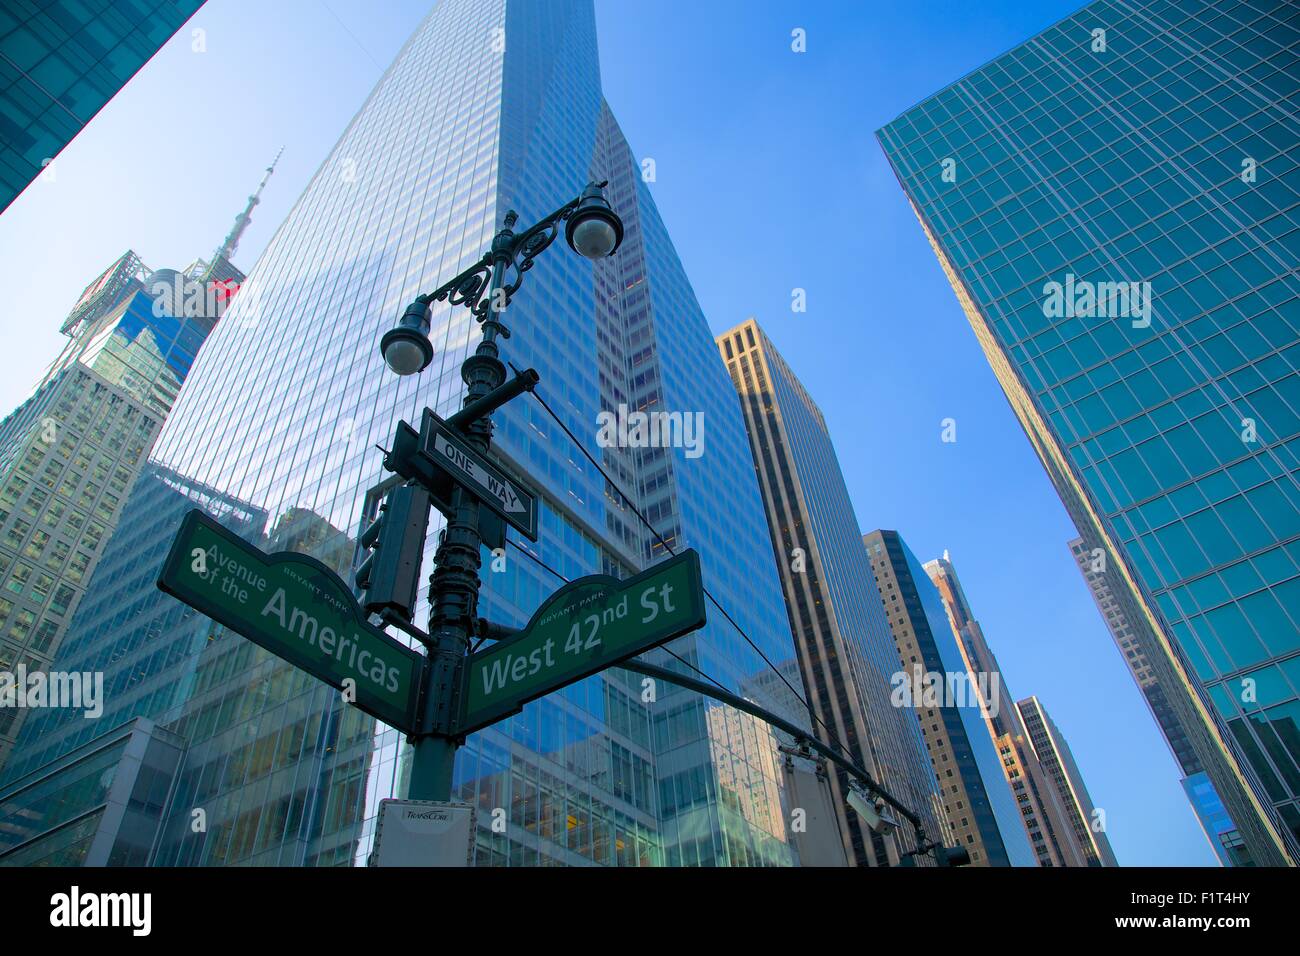 Zeichen der Avenue of the Americas und West 42nd Street, New York, Vereinigte Staaten von Amerika, Nordamerika Stockfoto